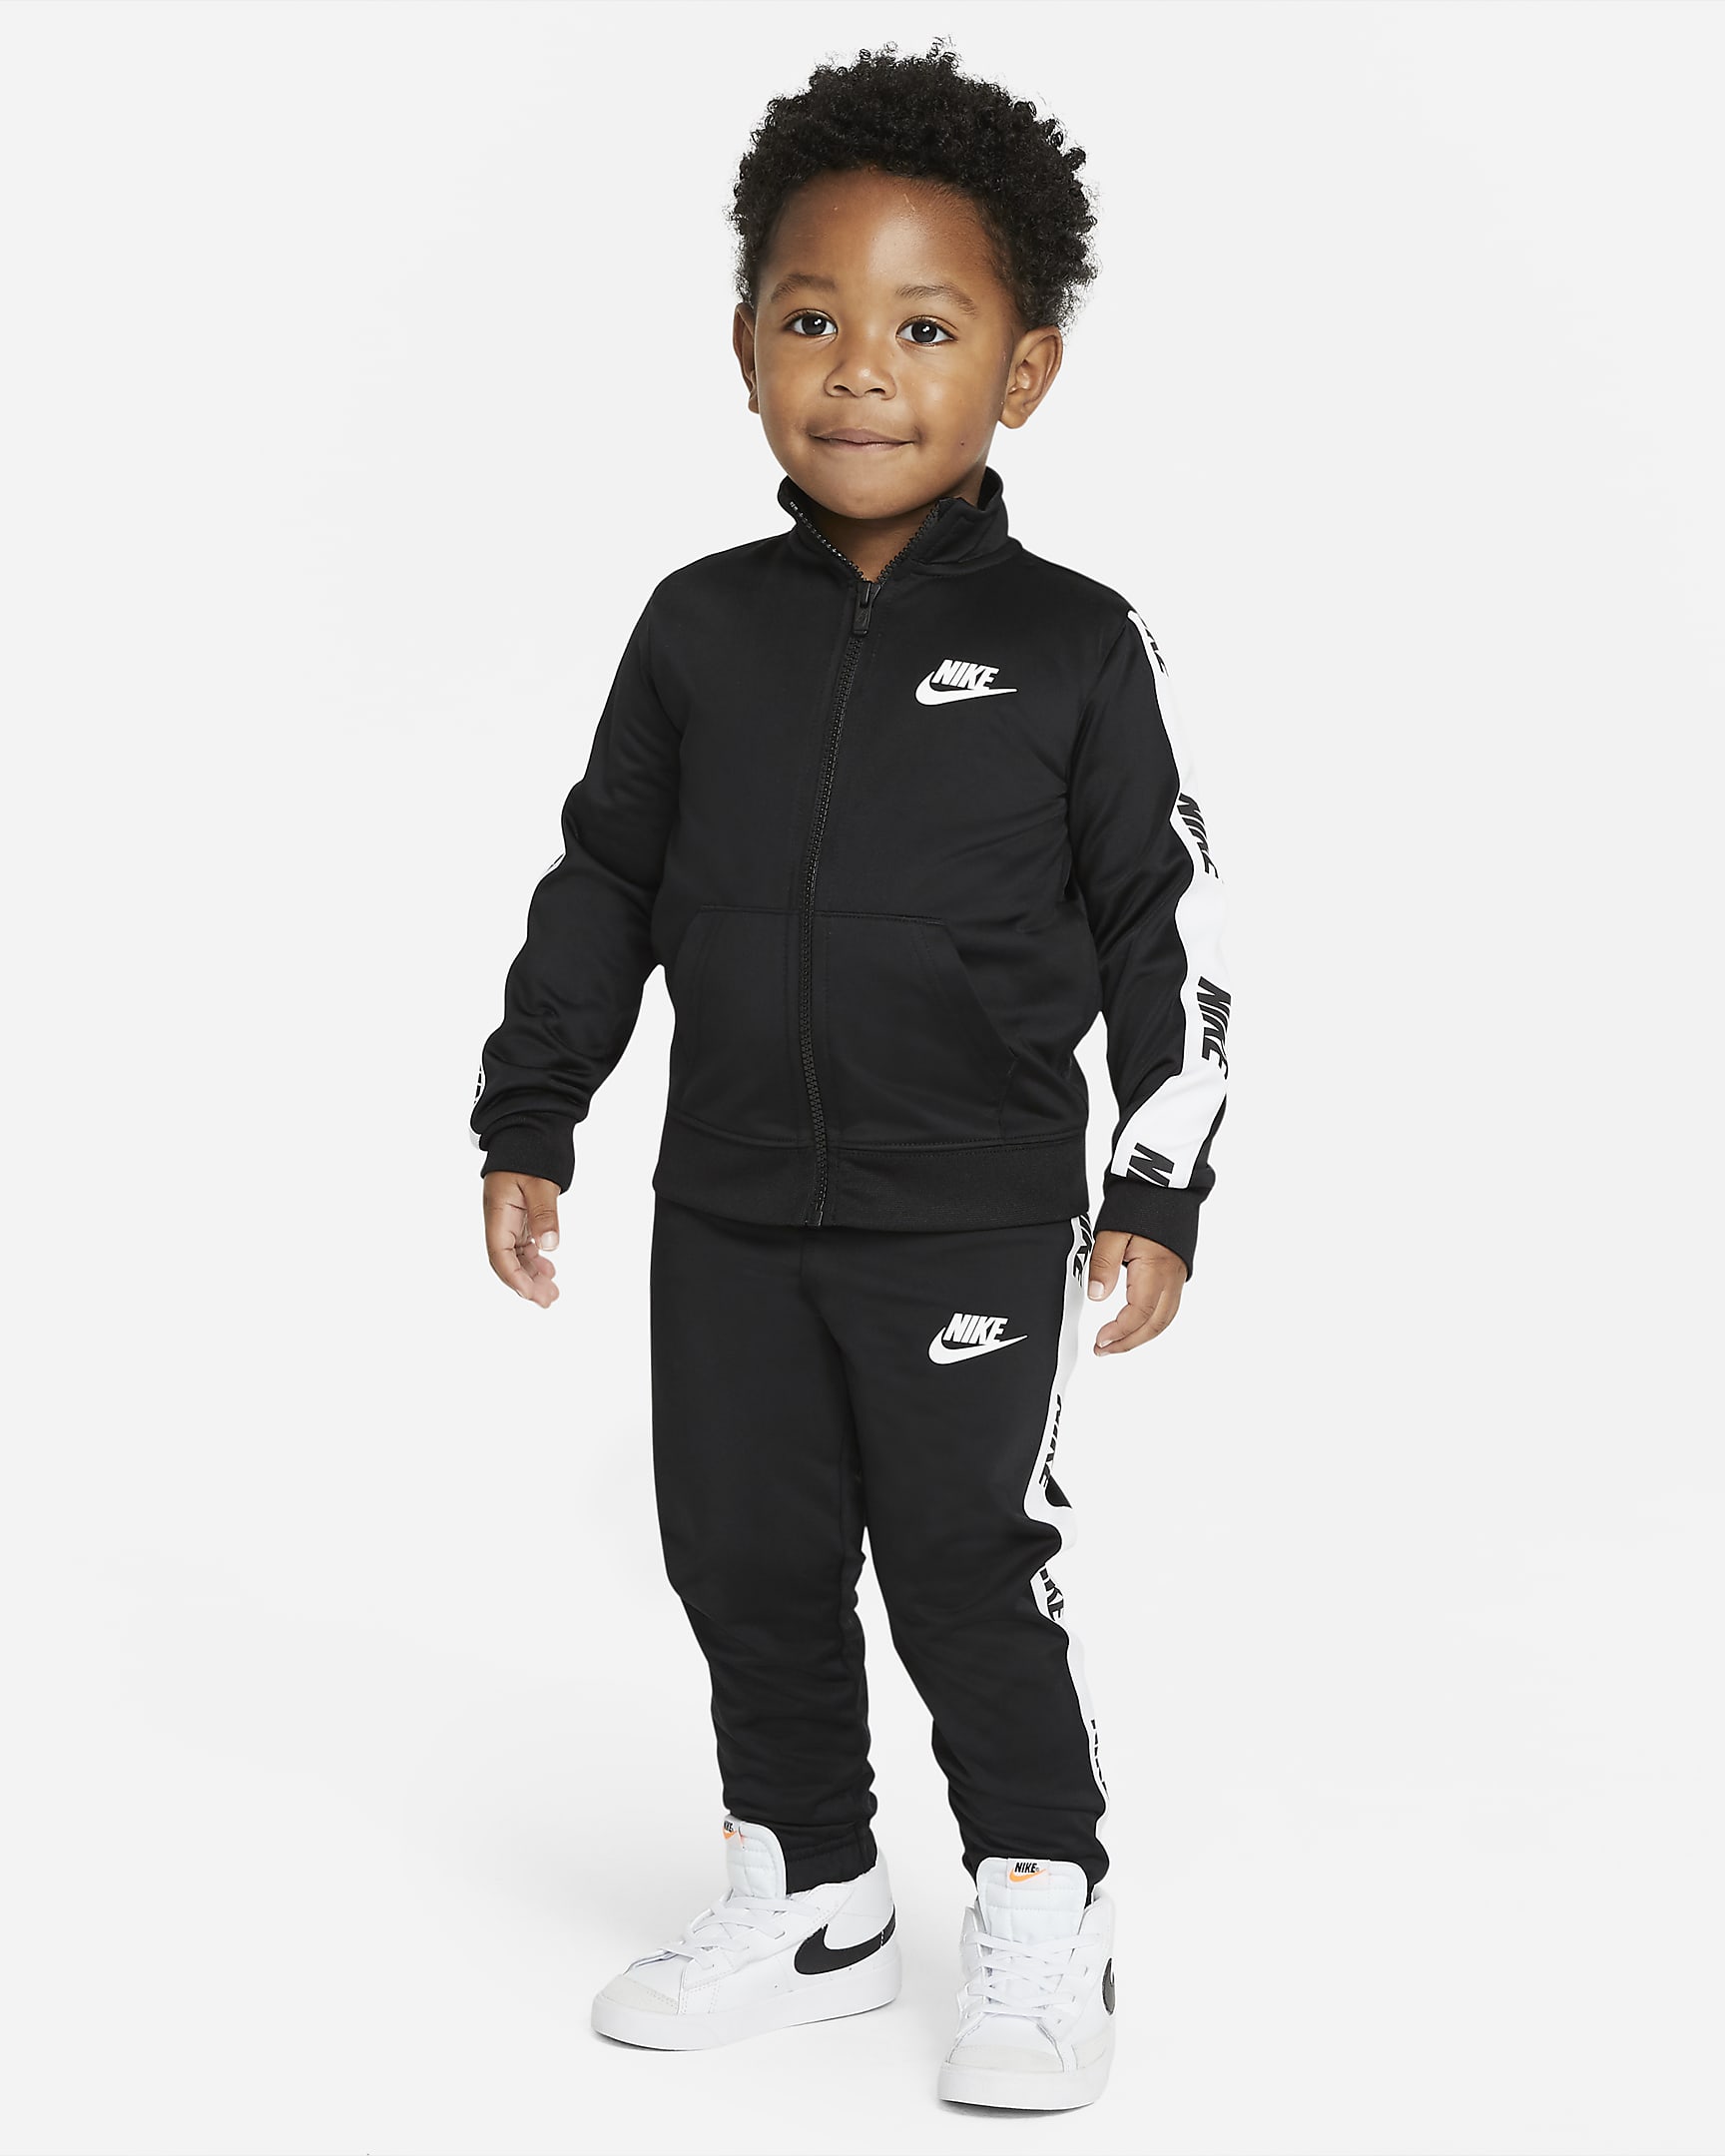 Nike Toddler Tracksuit.